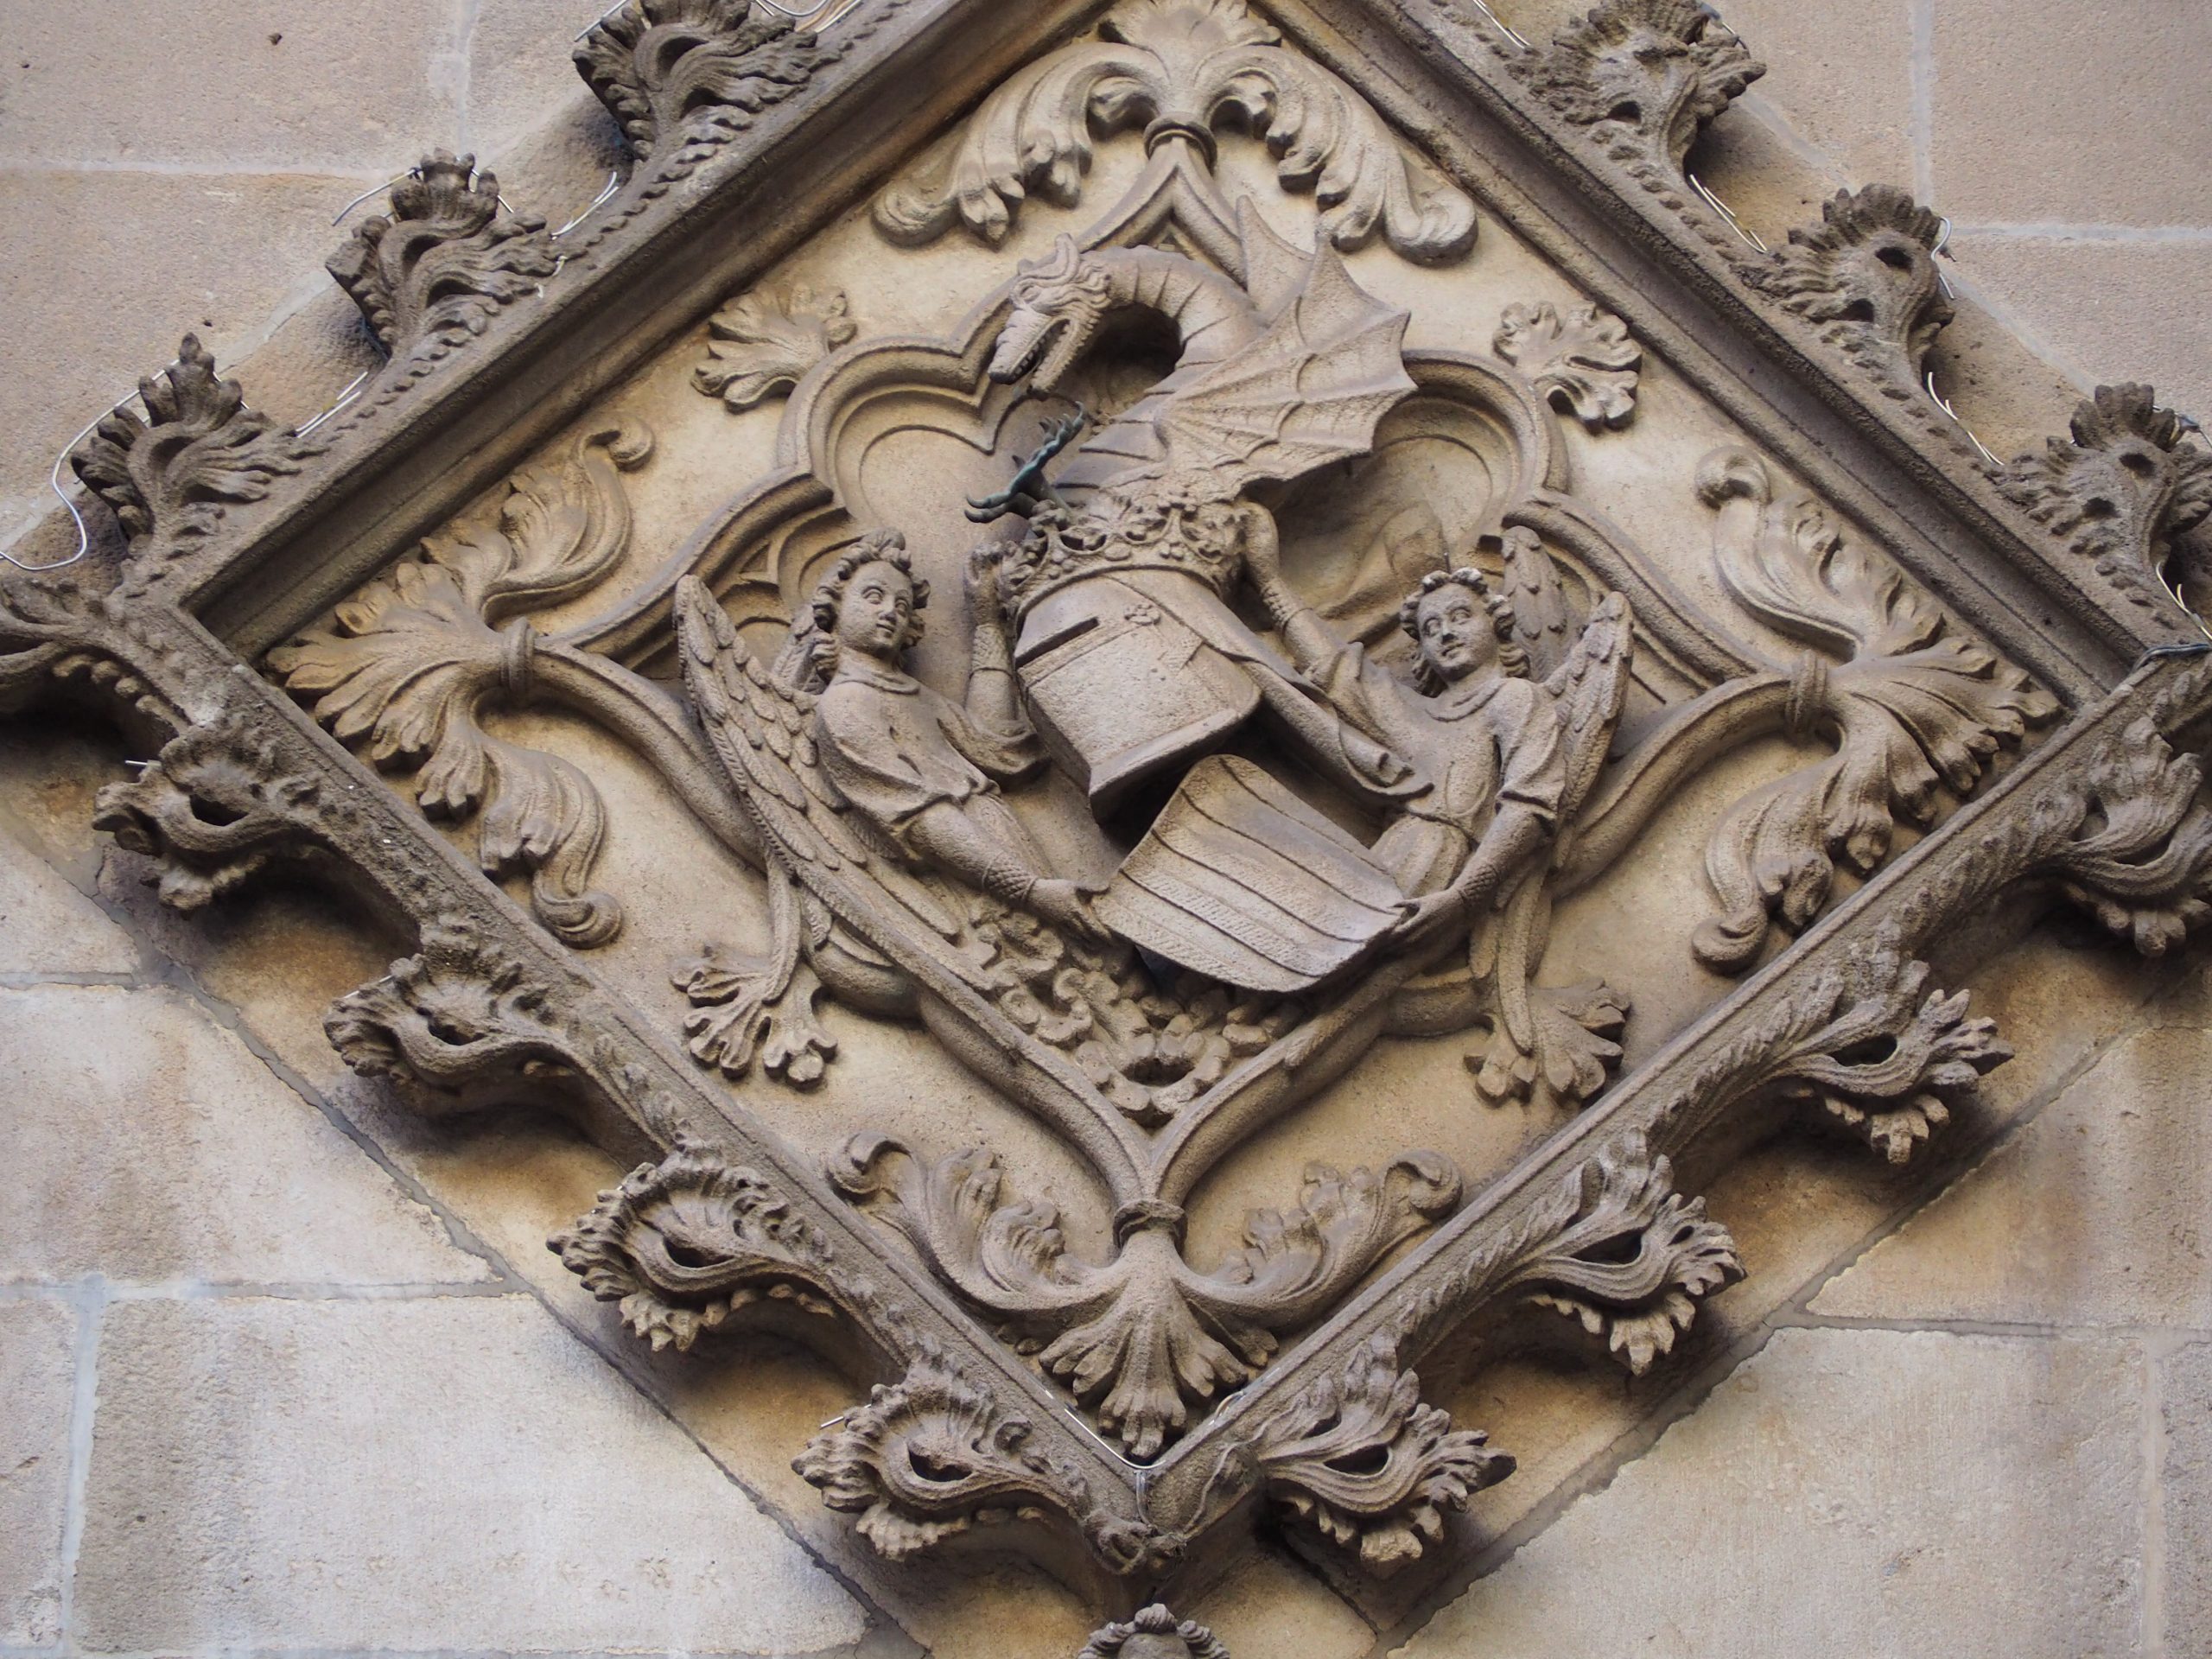 Un bouclier en pierre avec deux anges, un casque et un dragon sur l'hôtel de ville de Barcelone, Ajuntament. Place Sant Jaume, quartier gothique